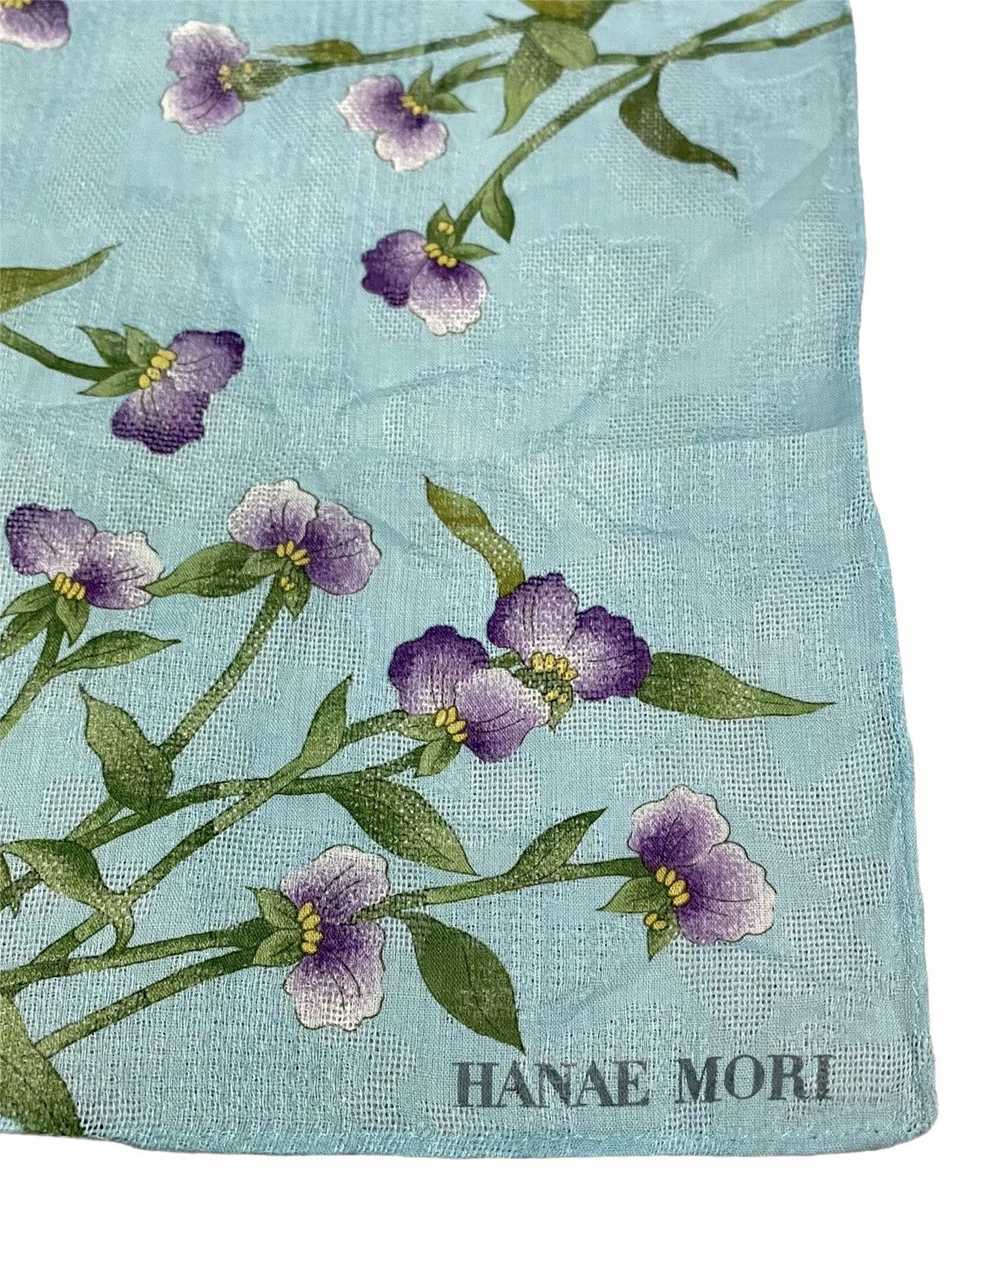 Hanae Mori × Japanese Brand HANDKERCHIEF NECKERCH… - image 4